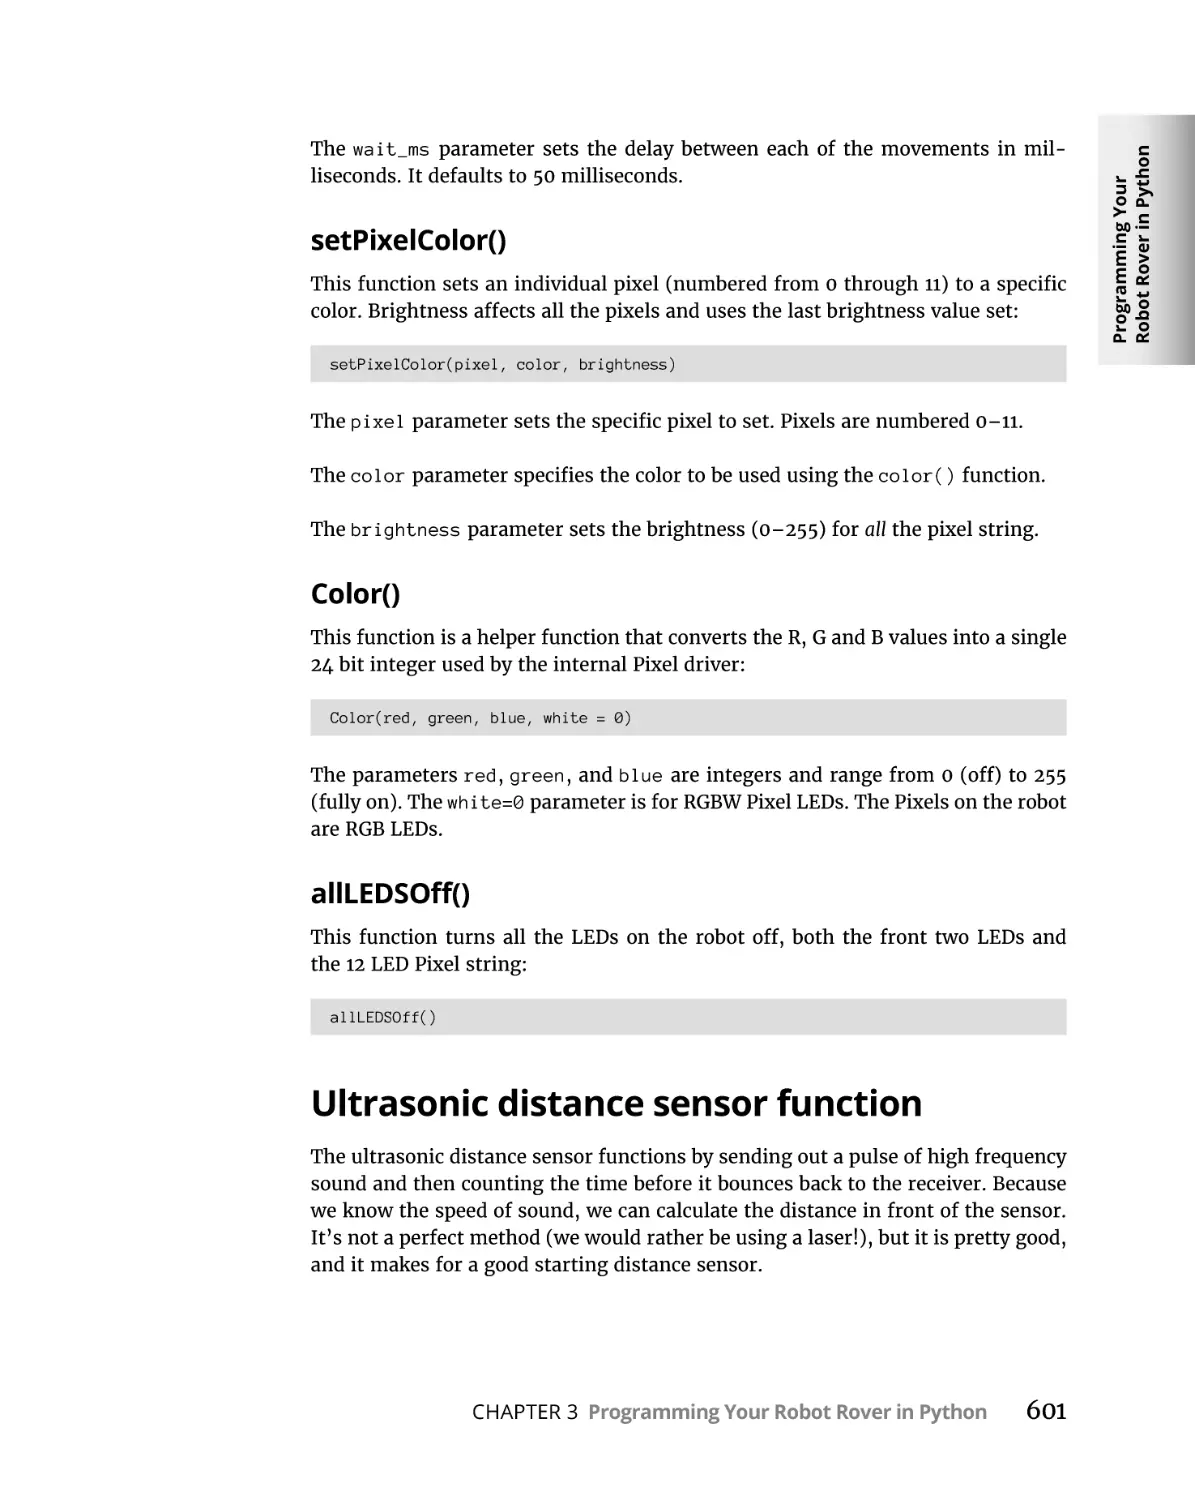 Ultrasonic distance sensor function